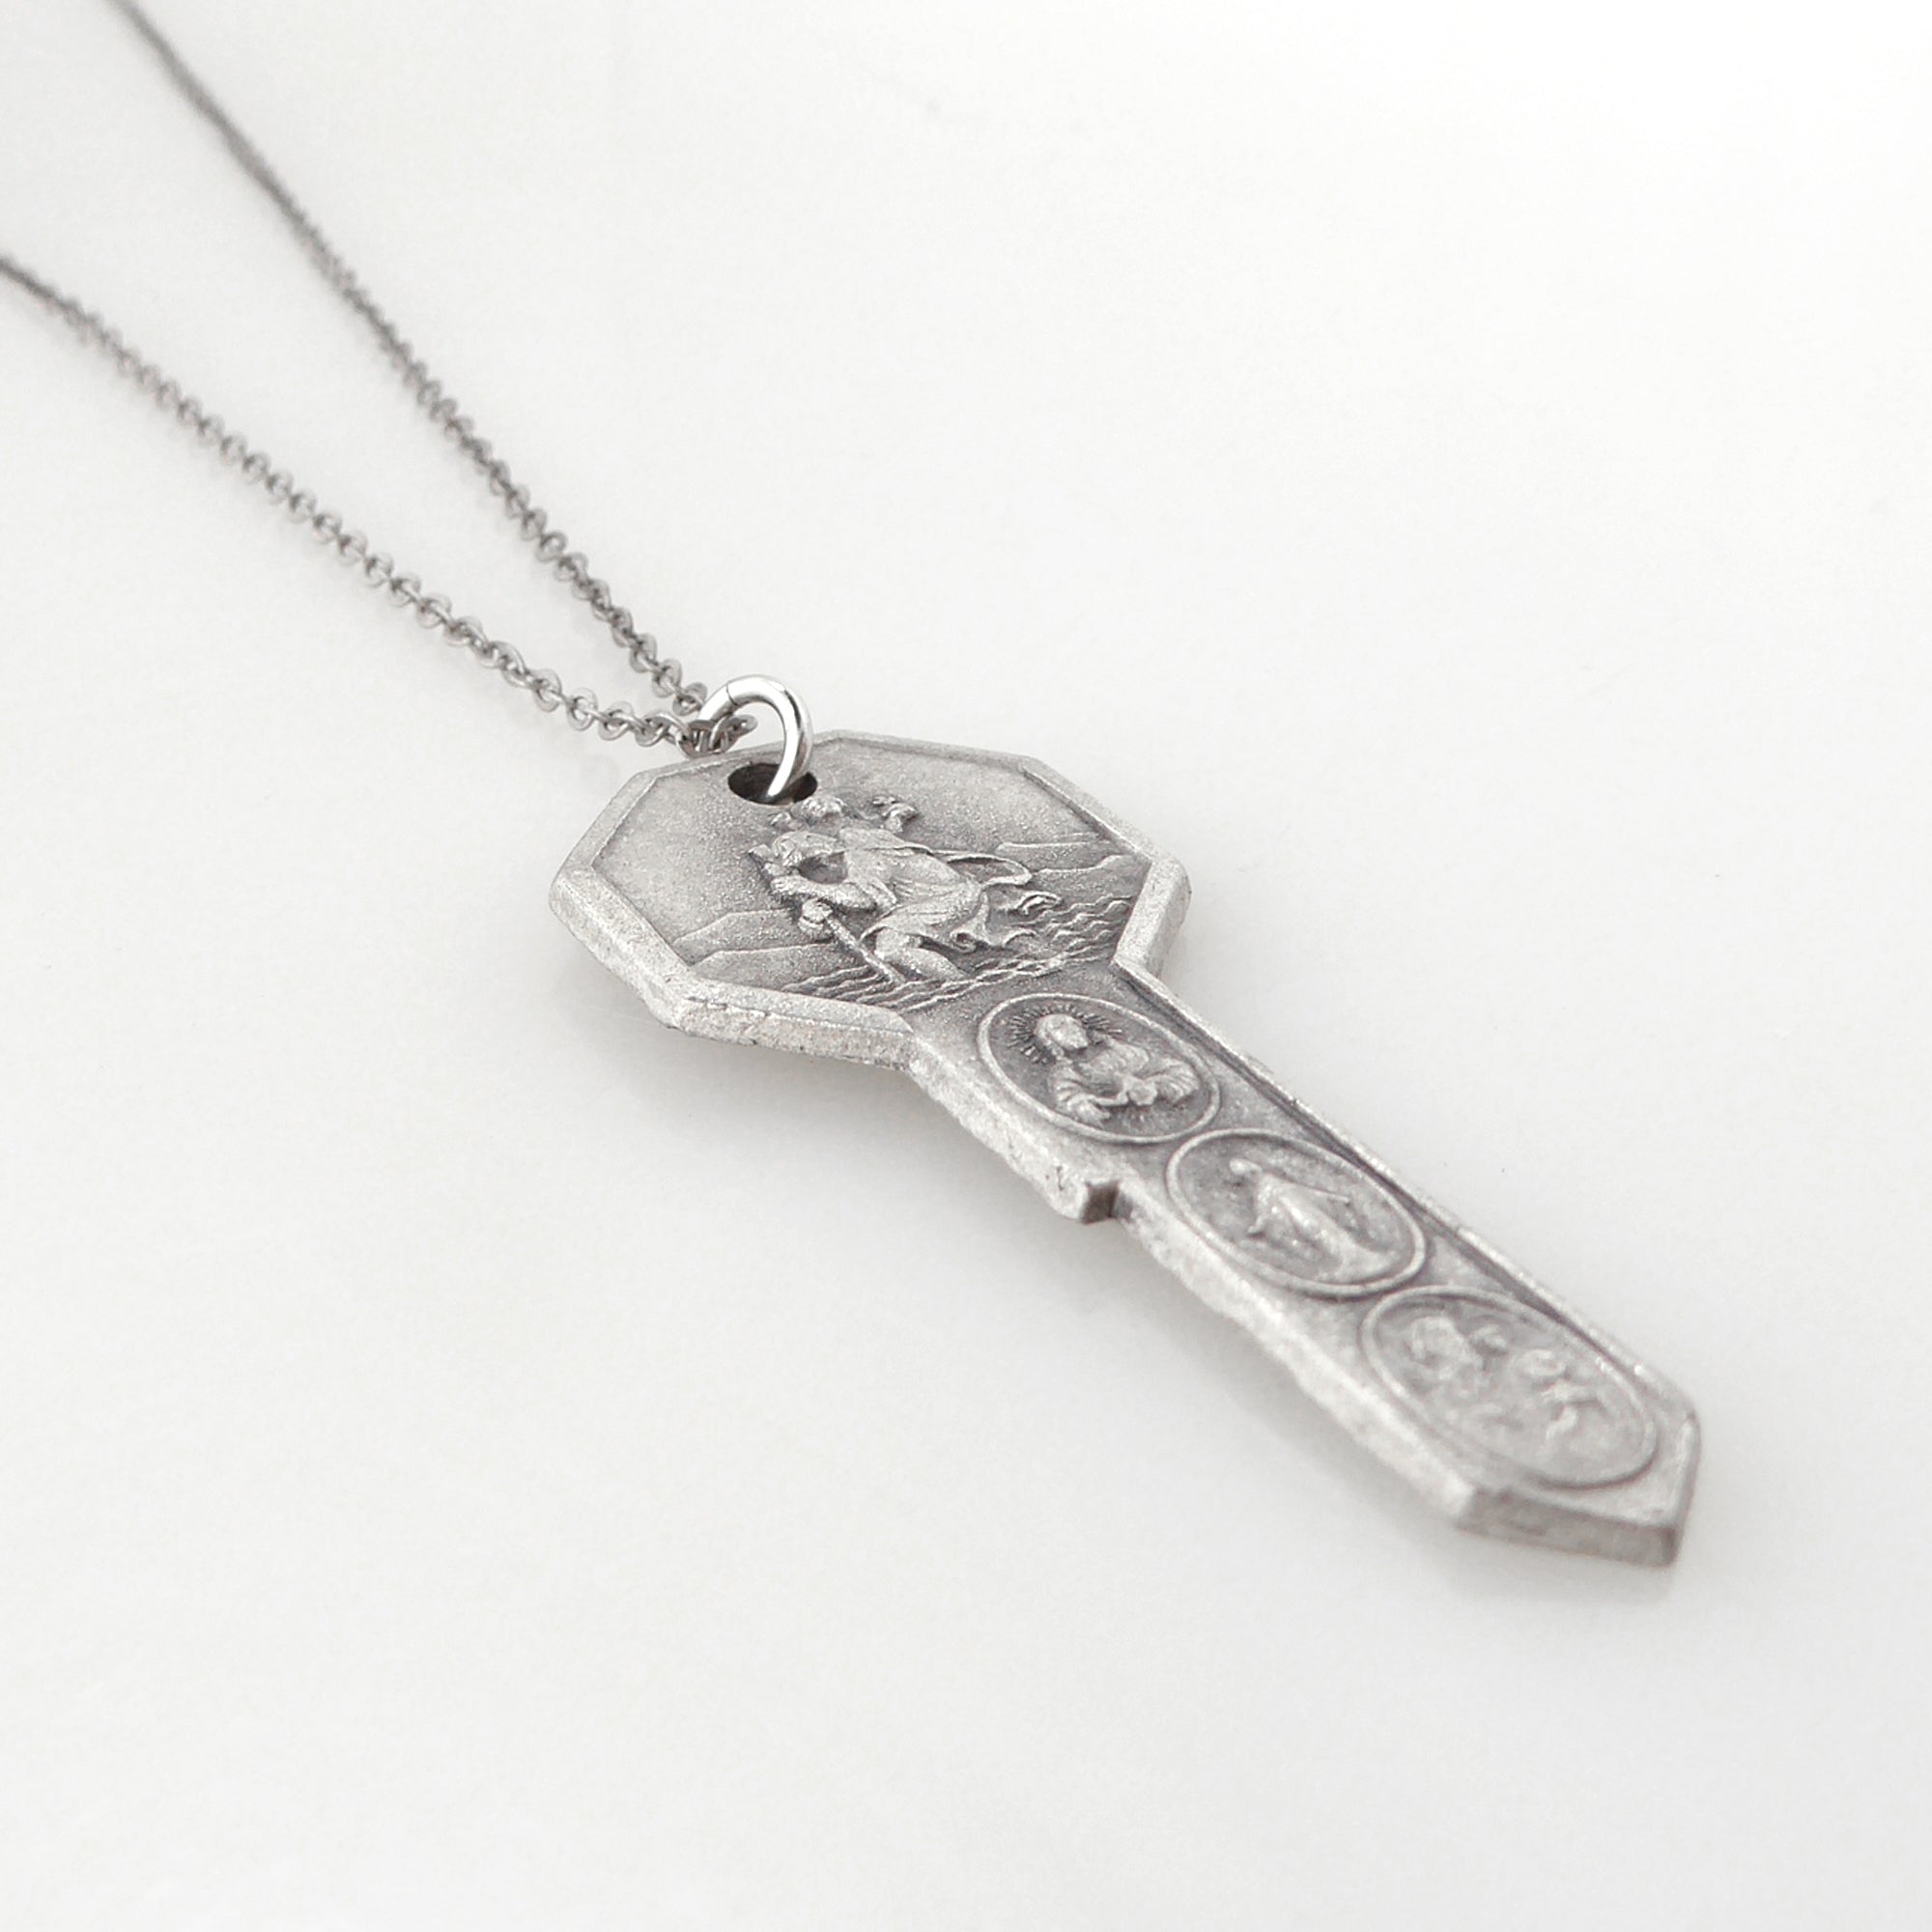 St Anthony key necklace by Jenny Dayco 2